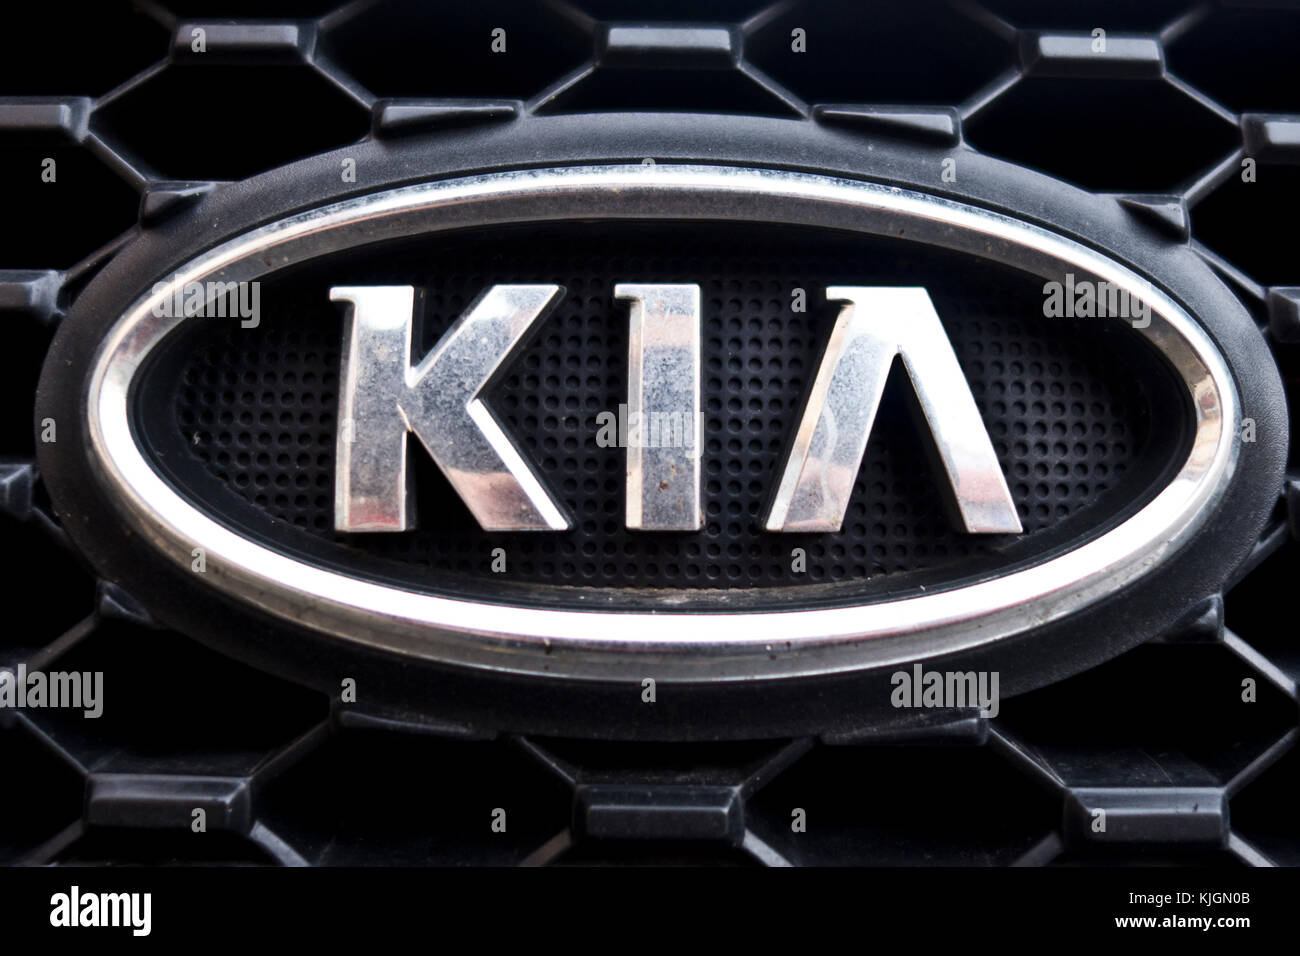 Kia logo on car grille Stock Photo